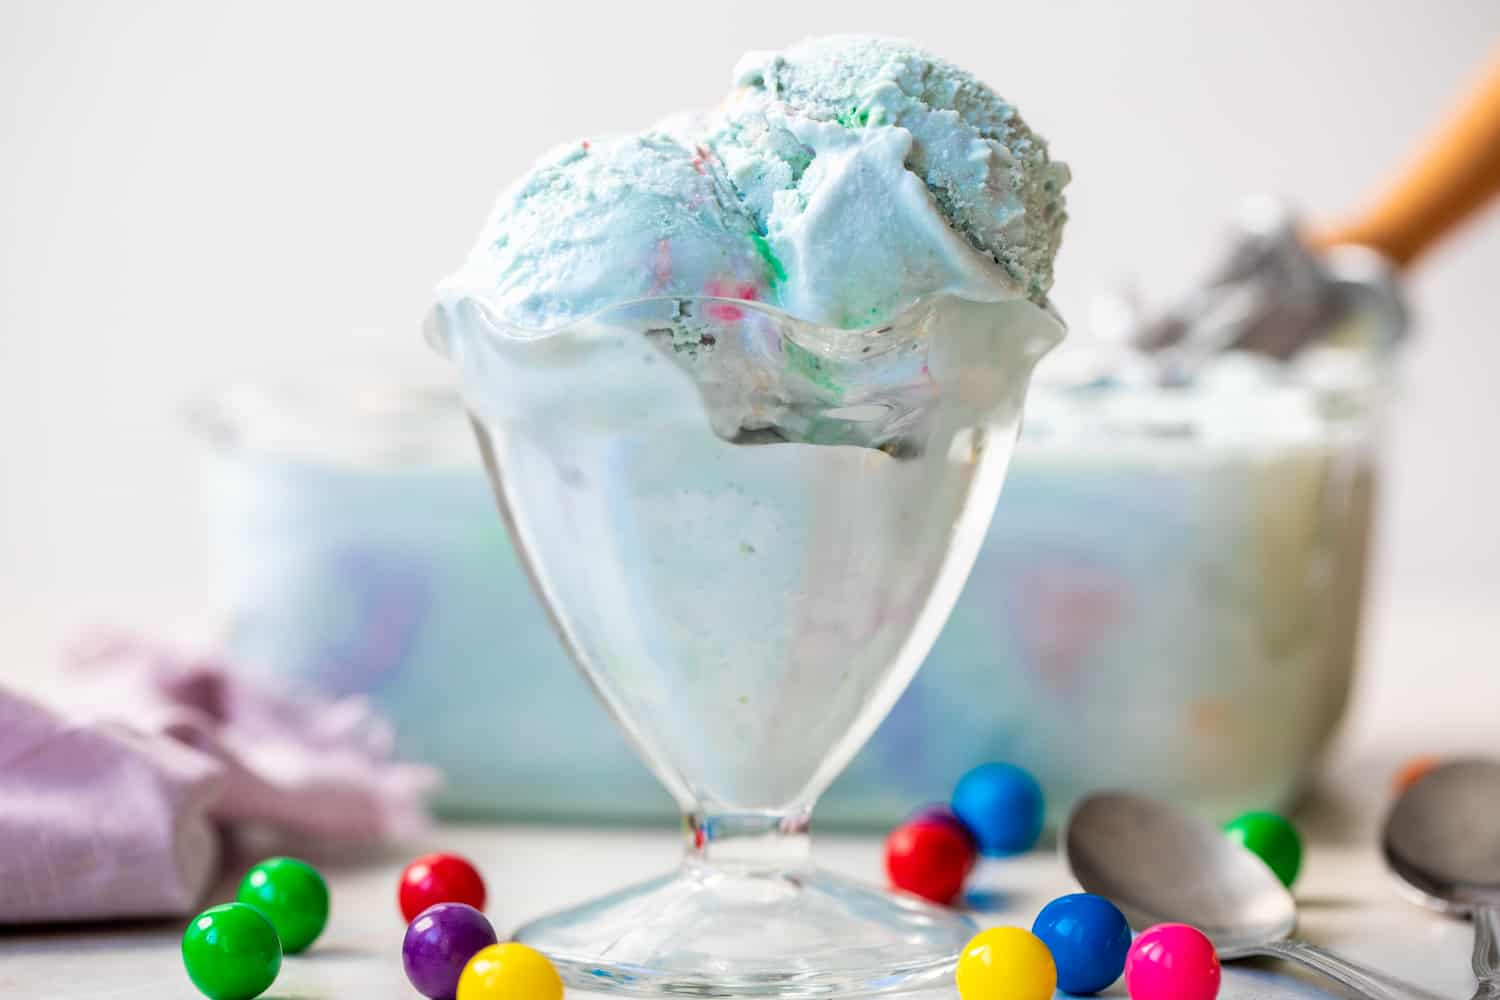 Copo para gelado de vidro cheio de gelado de pastilha elástica azul claro, recipiente de gelado no fundo e bolas de goma extra à volta do copo para gelado.